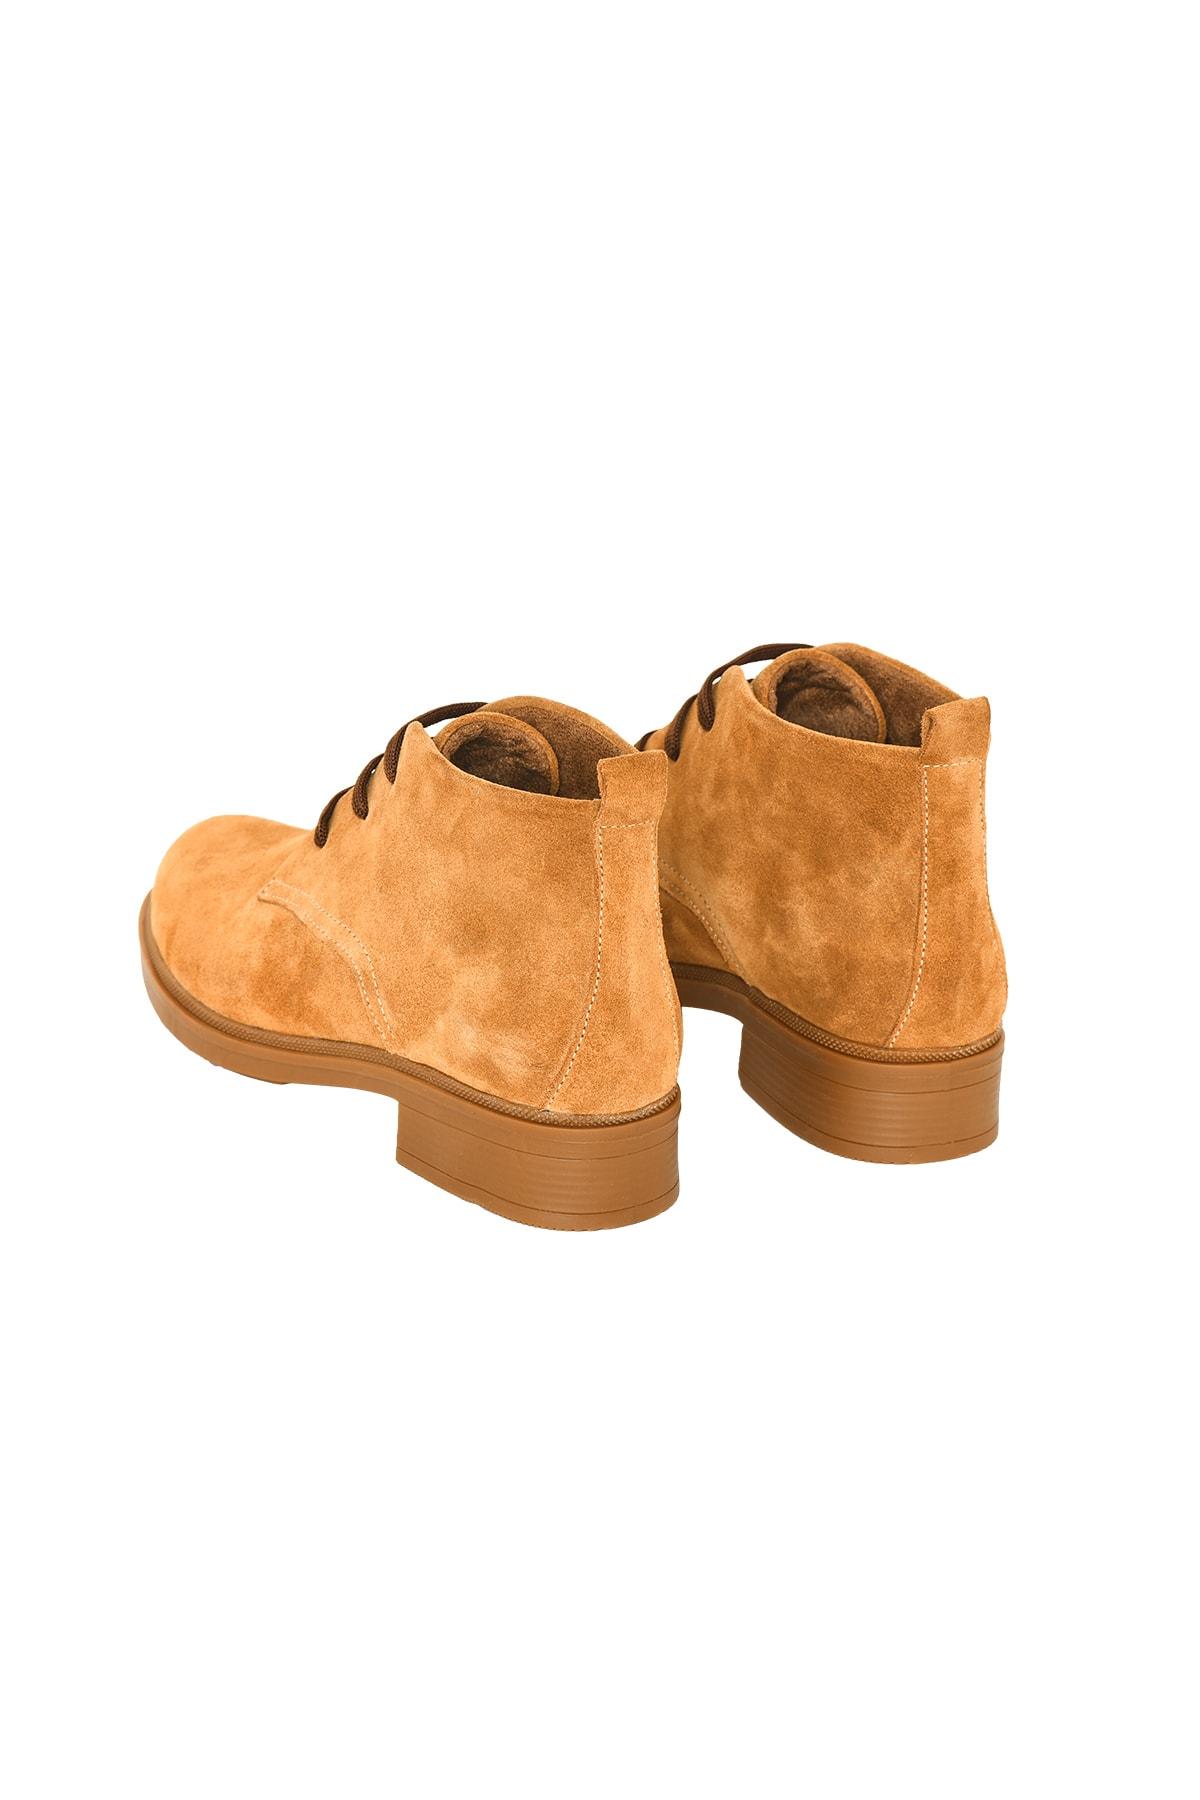 Изображение товара: Женские Классические ботинки челси, коричневые, бежевые, белые удобные теплые зимние ботинки до щиколотки, Уличная обувь из натуральной кожи 100